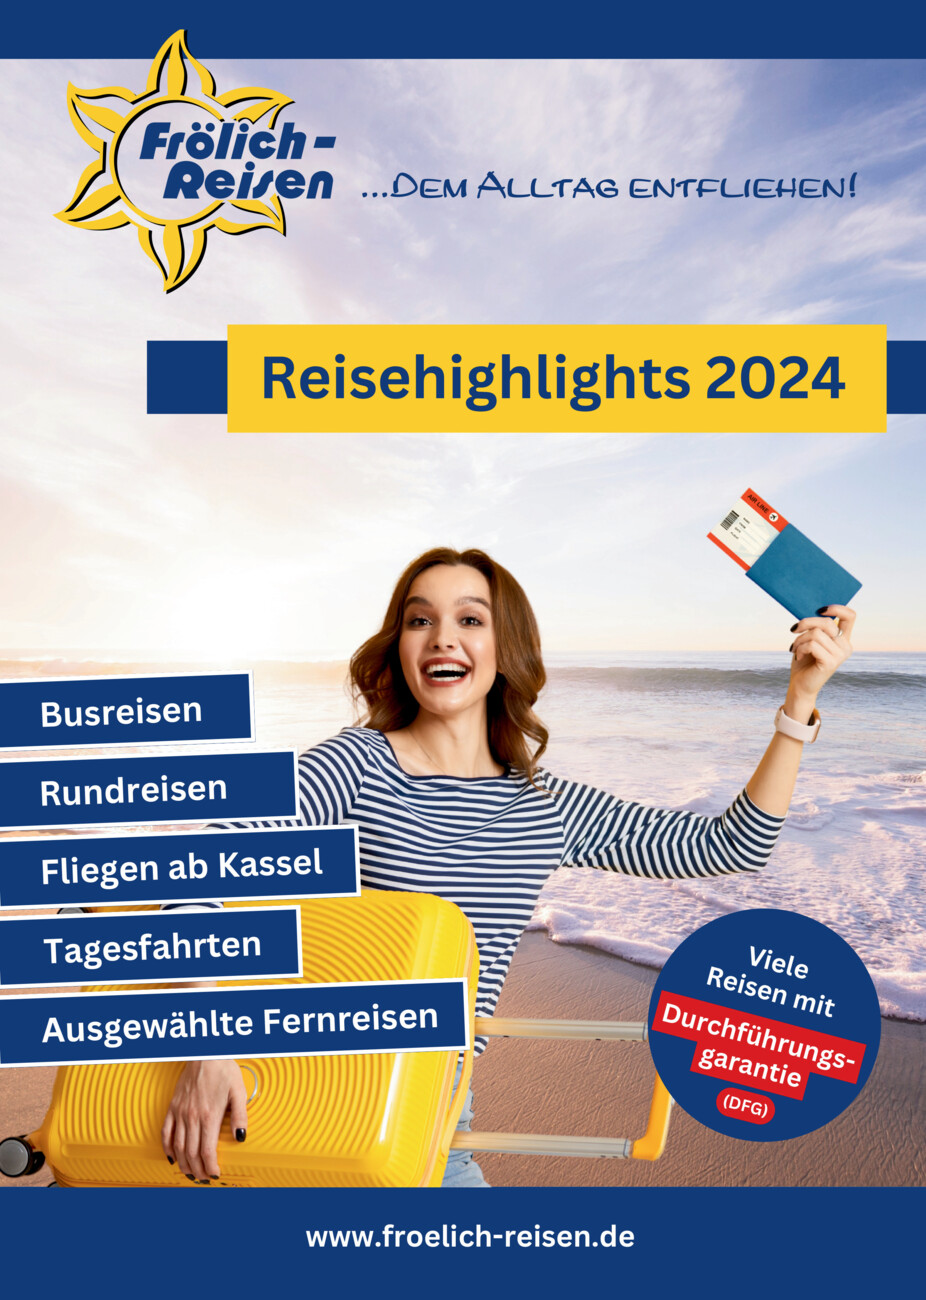 Frölich-Reisen – Reisehighlights 2024 vom Samstag, 27.04.2024